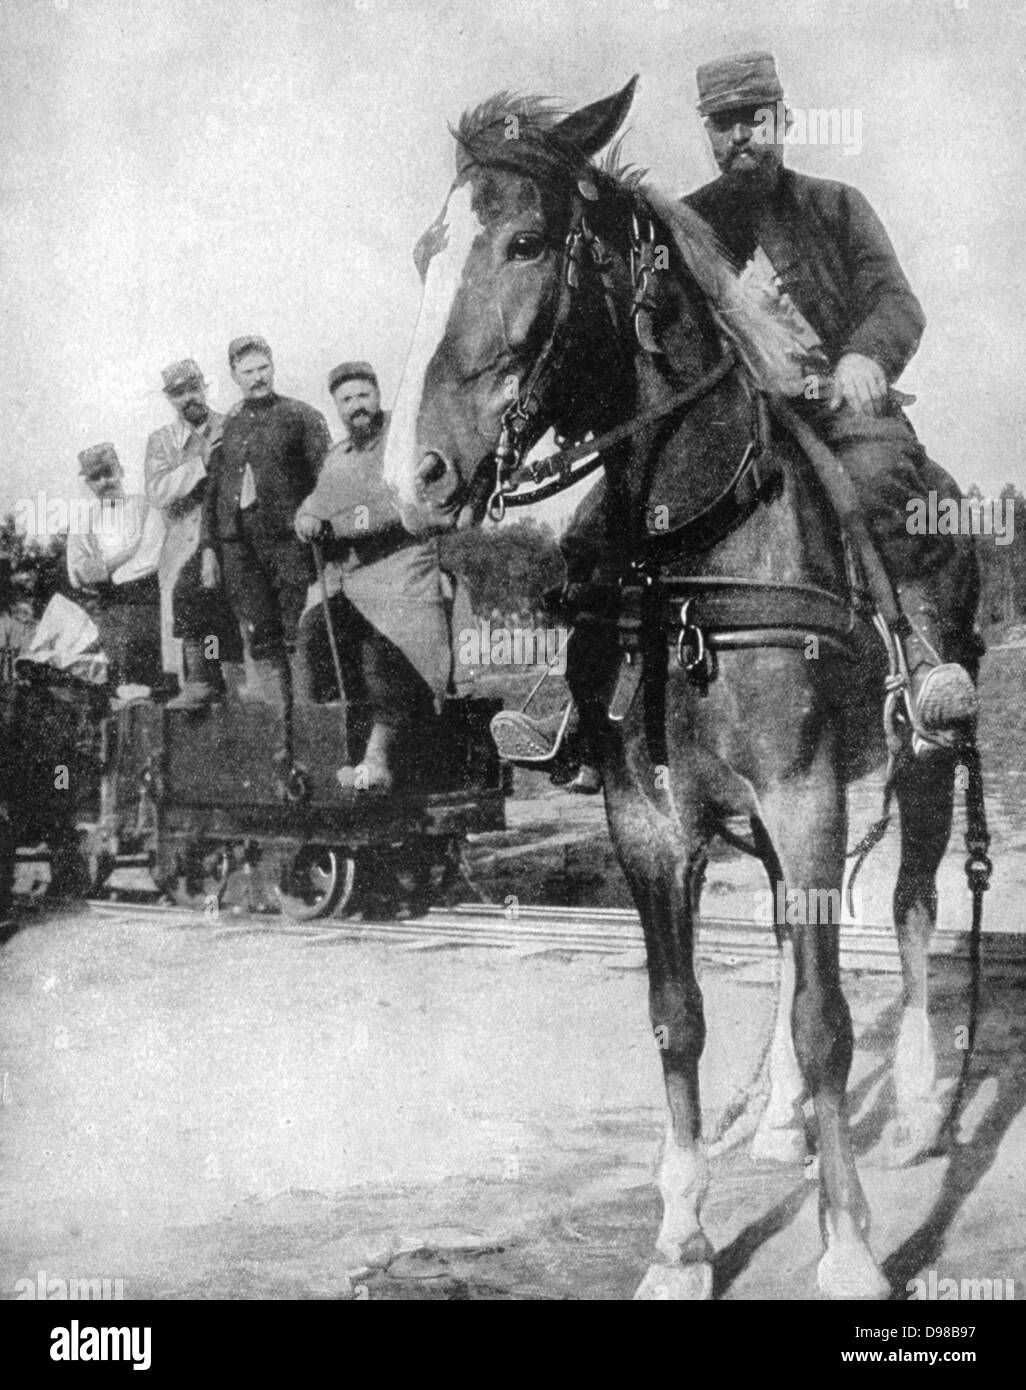 Der erste Weltkrieg 1914-1918: In Argonne Forest nord-Frankreich, ein Light Railway Track der Decauville vorgefertigte Teile installiert wurde. Wagon Trains Truppen mit Lebensmitteln versorgt wurden Pferdekutschen. Französisch, Militär, Armee, Verkehr Stockfoto